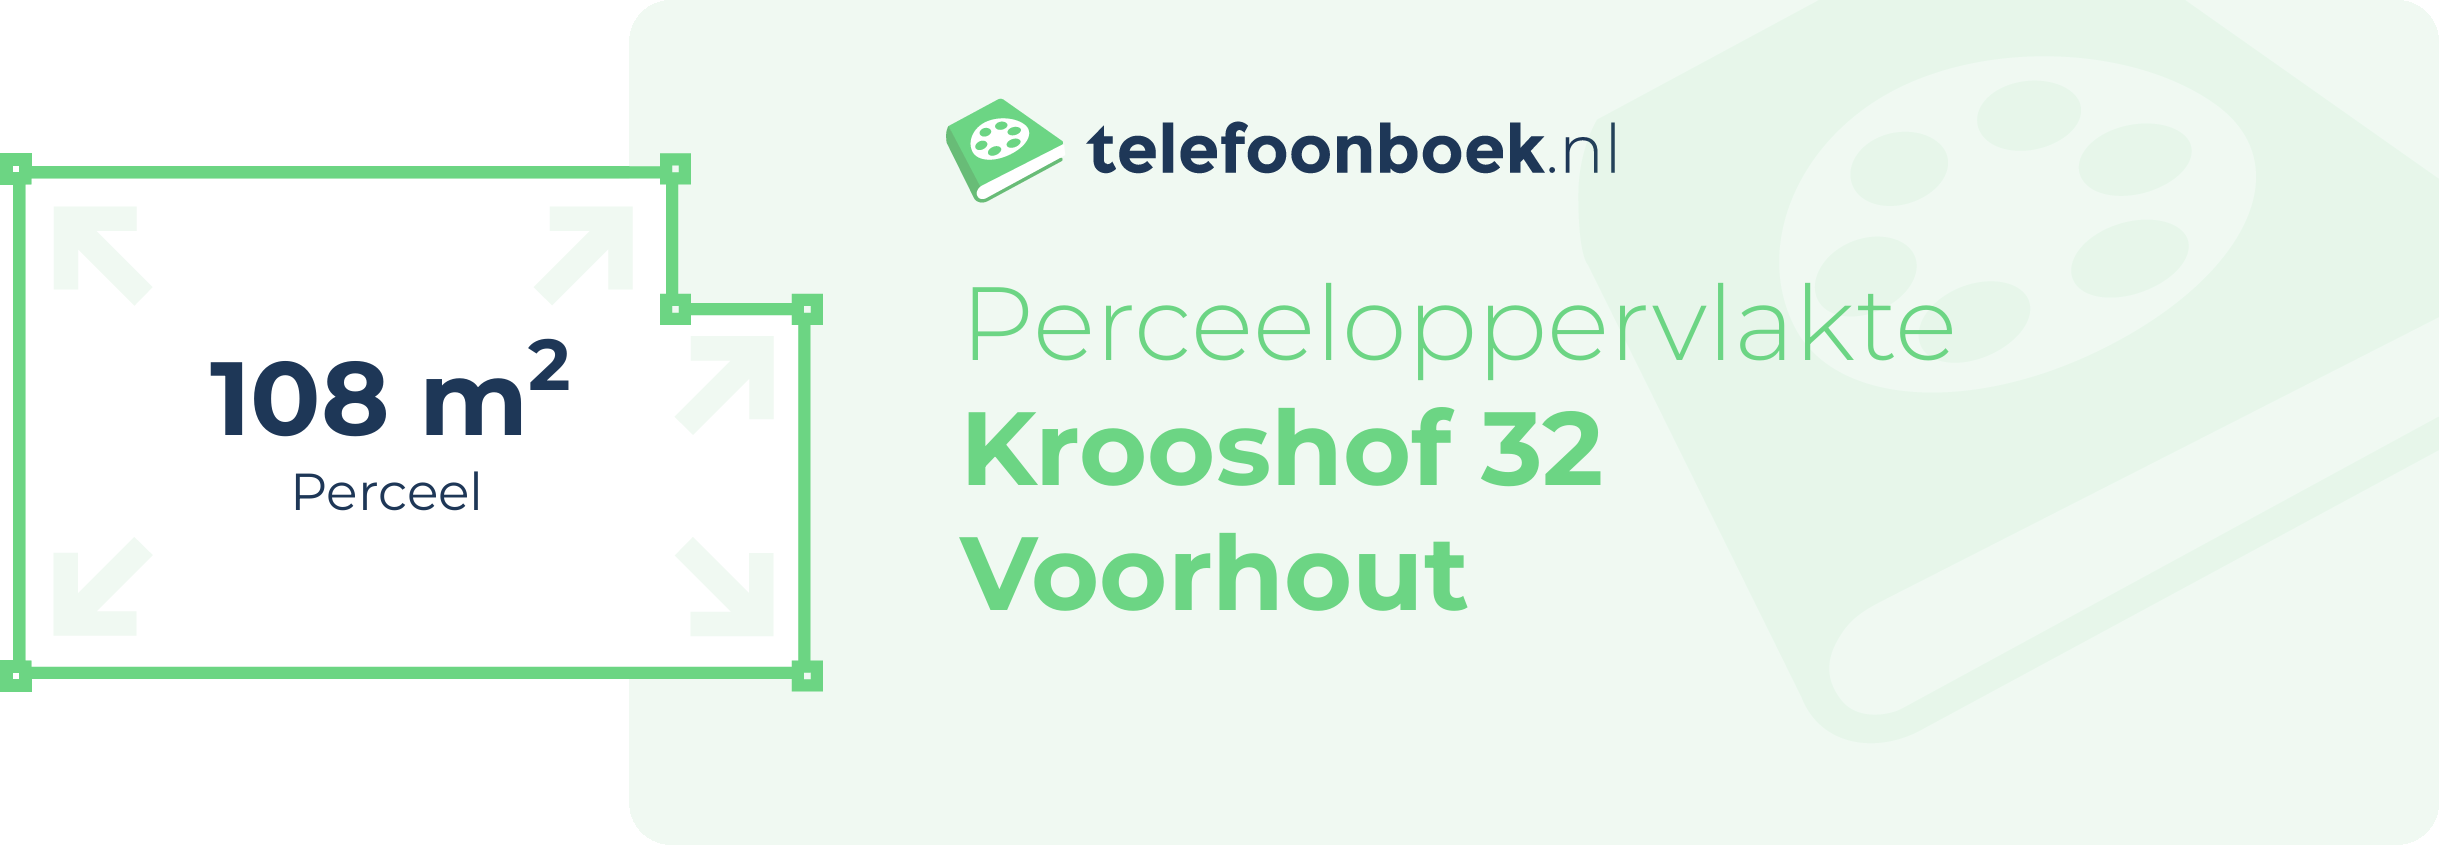 Perceeloppervlakte Krooshof 32 Voorhout